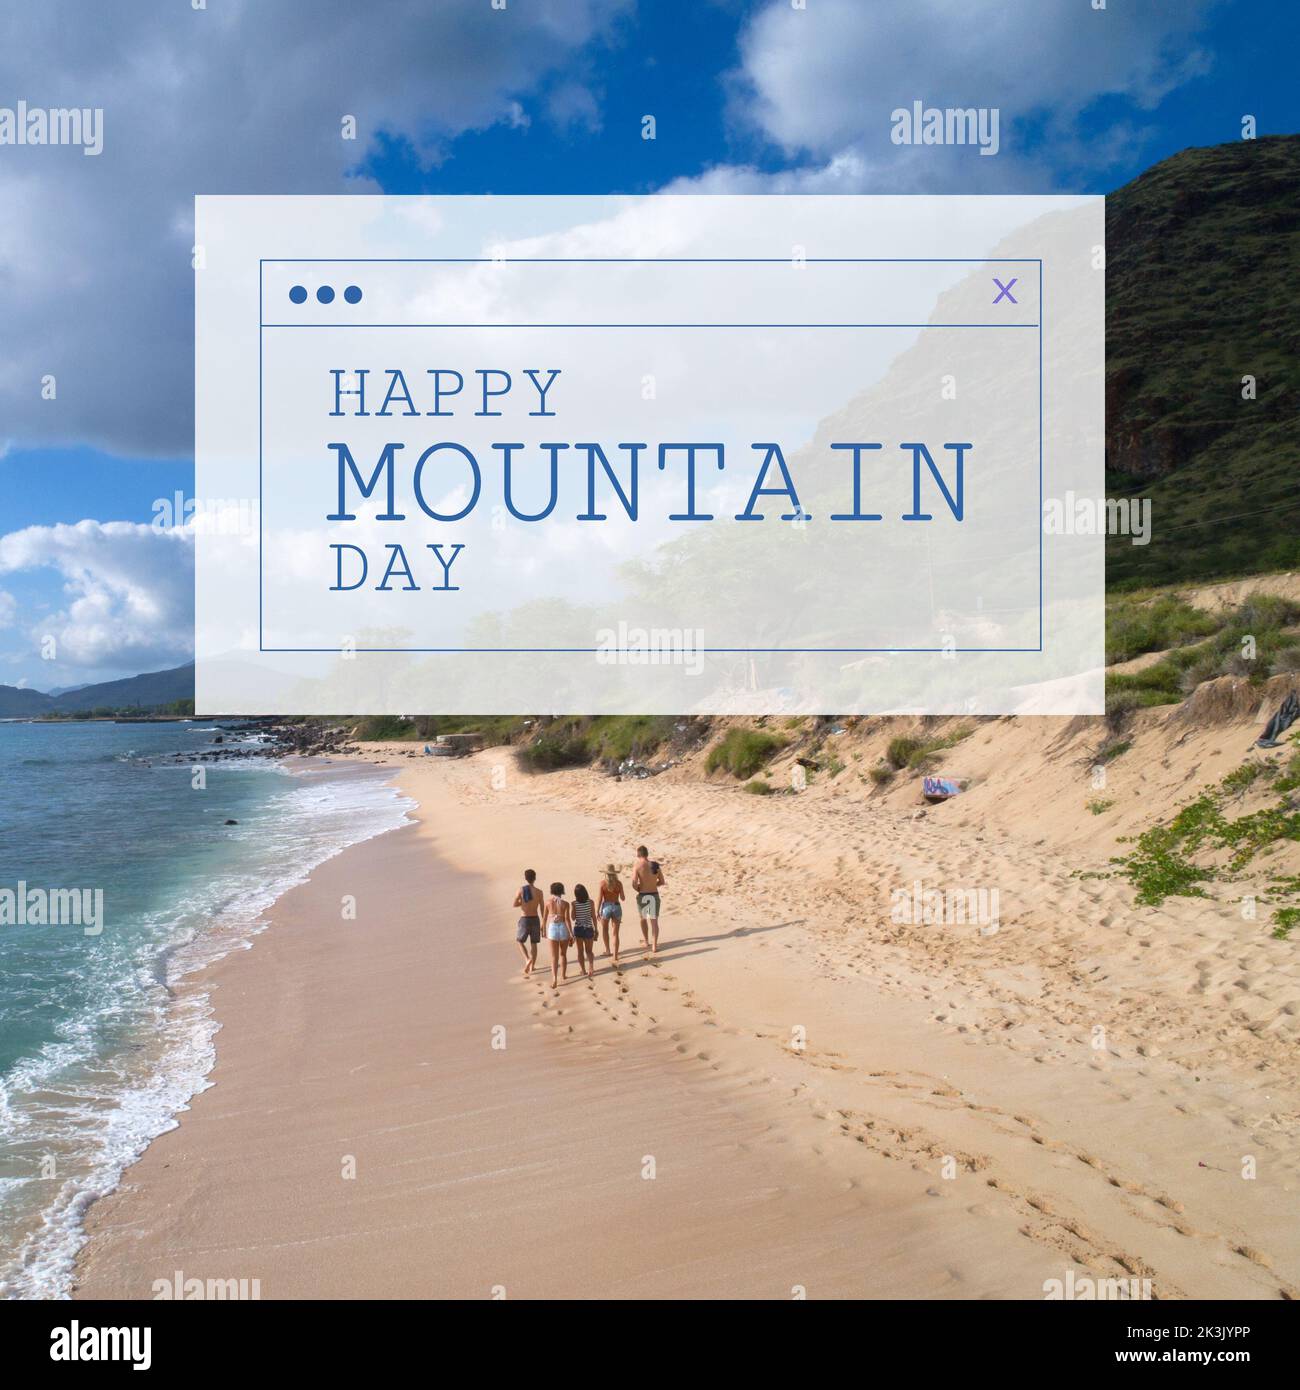 Imagen de un día feliz de montaña sobre un paisaje con mar y montañas Foto de stock